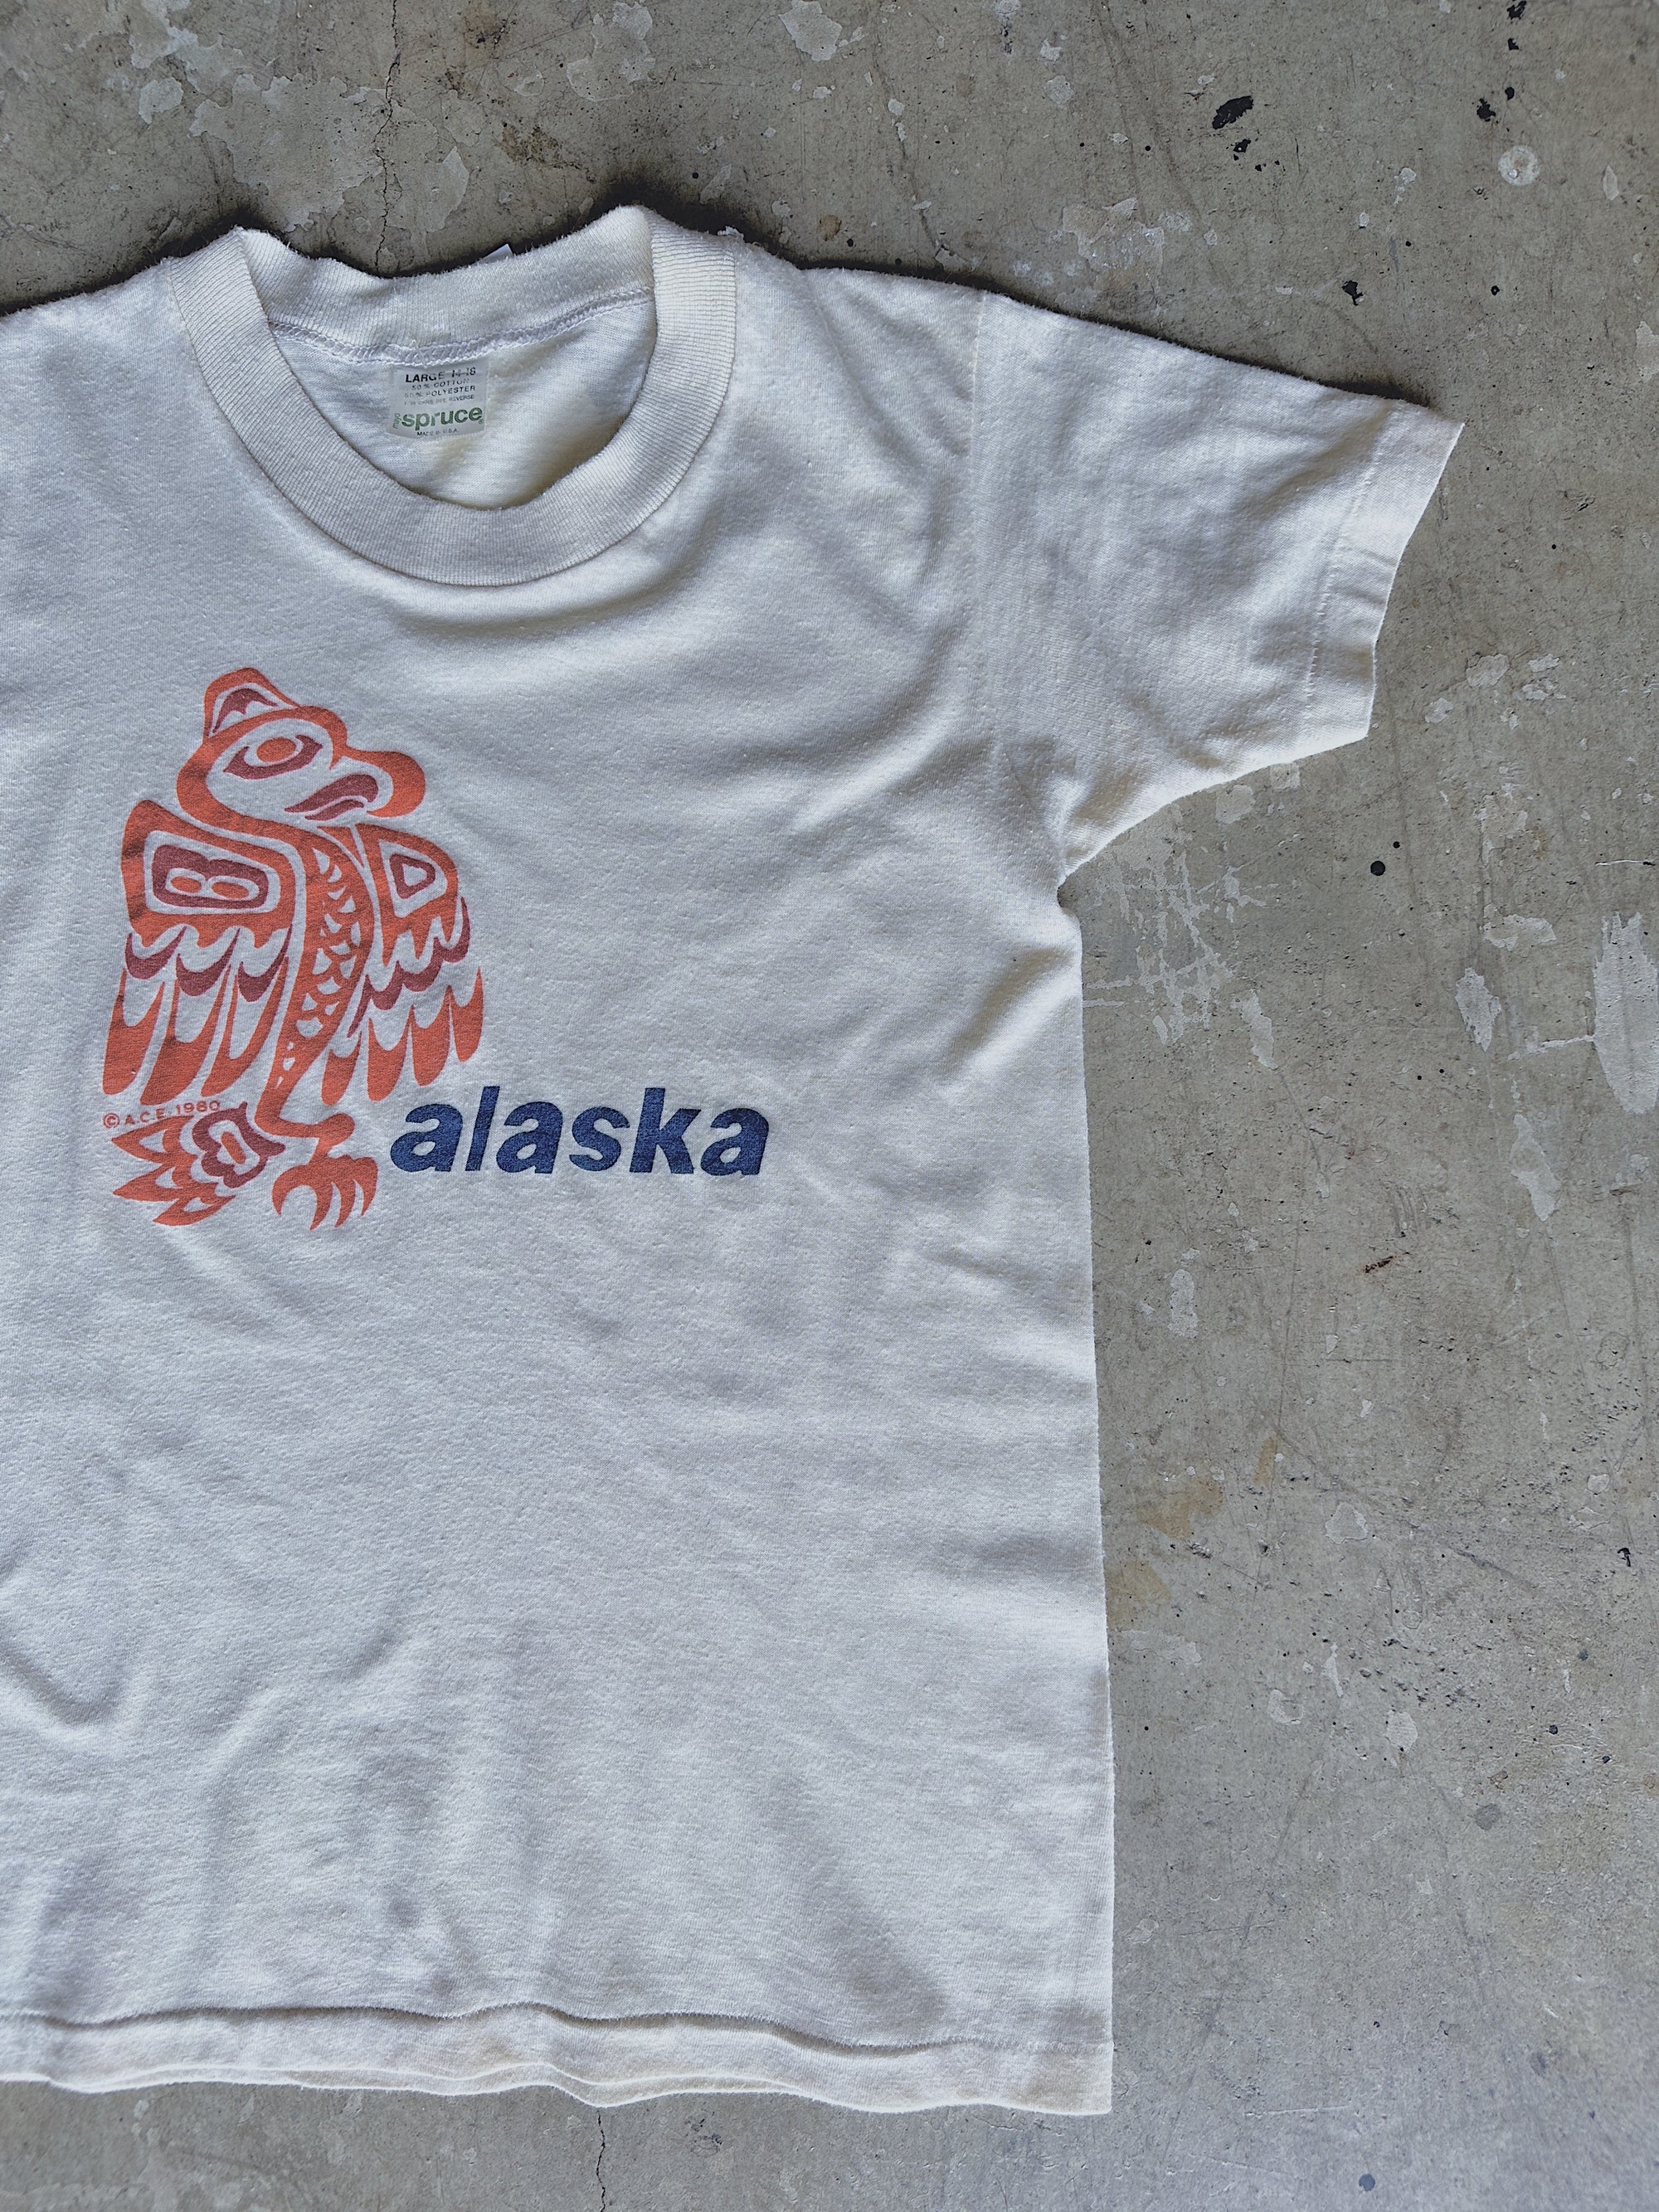 1980s Alaska Tee